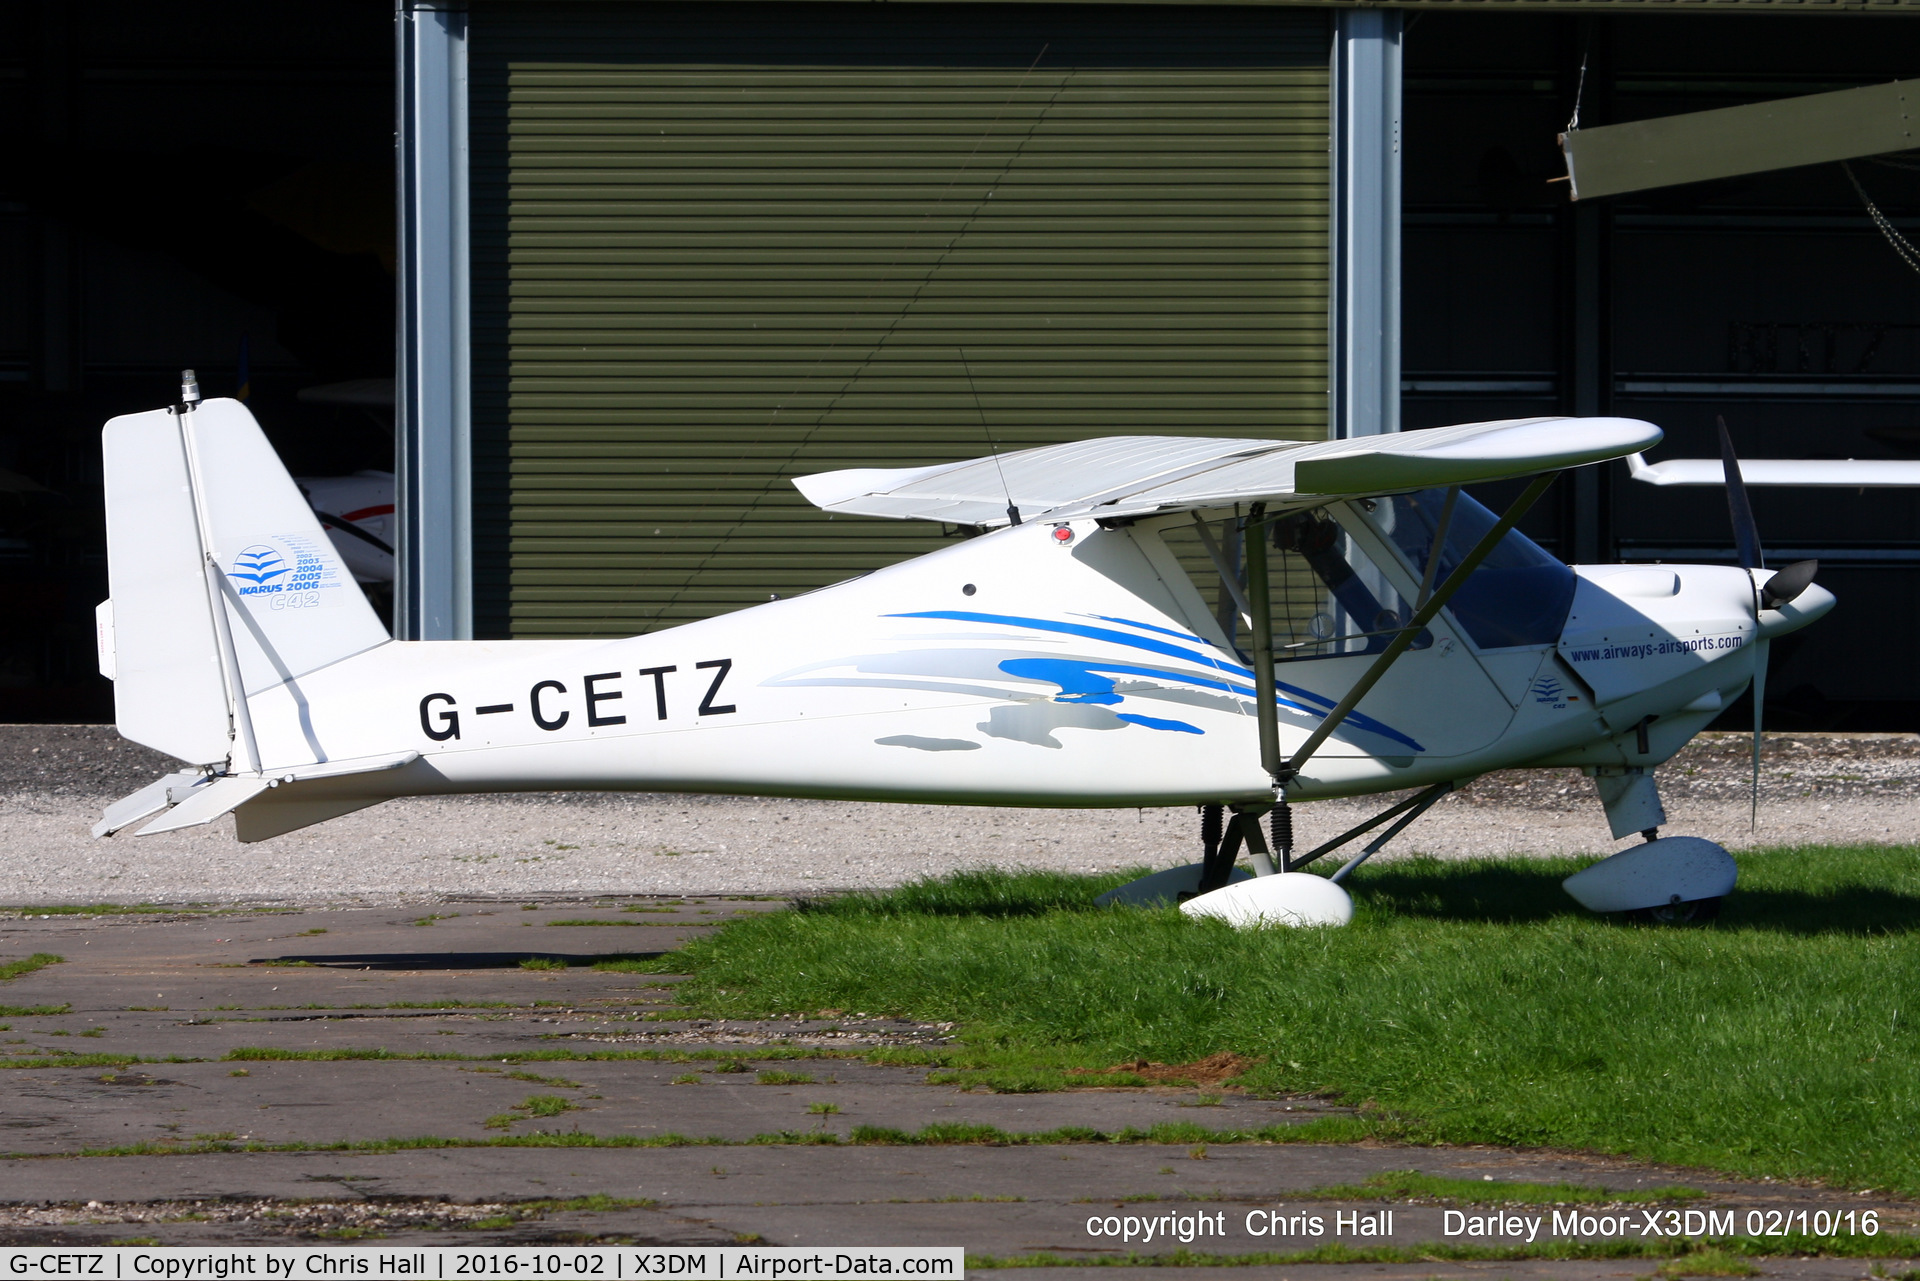 G-CETZ, 2007 Comco Ikarus C42 FB100 C/N 0706-6899, at Darley Moor Airfield